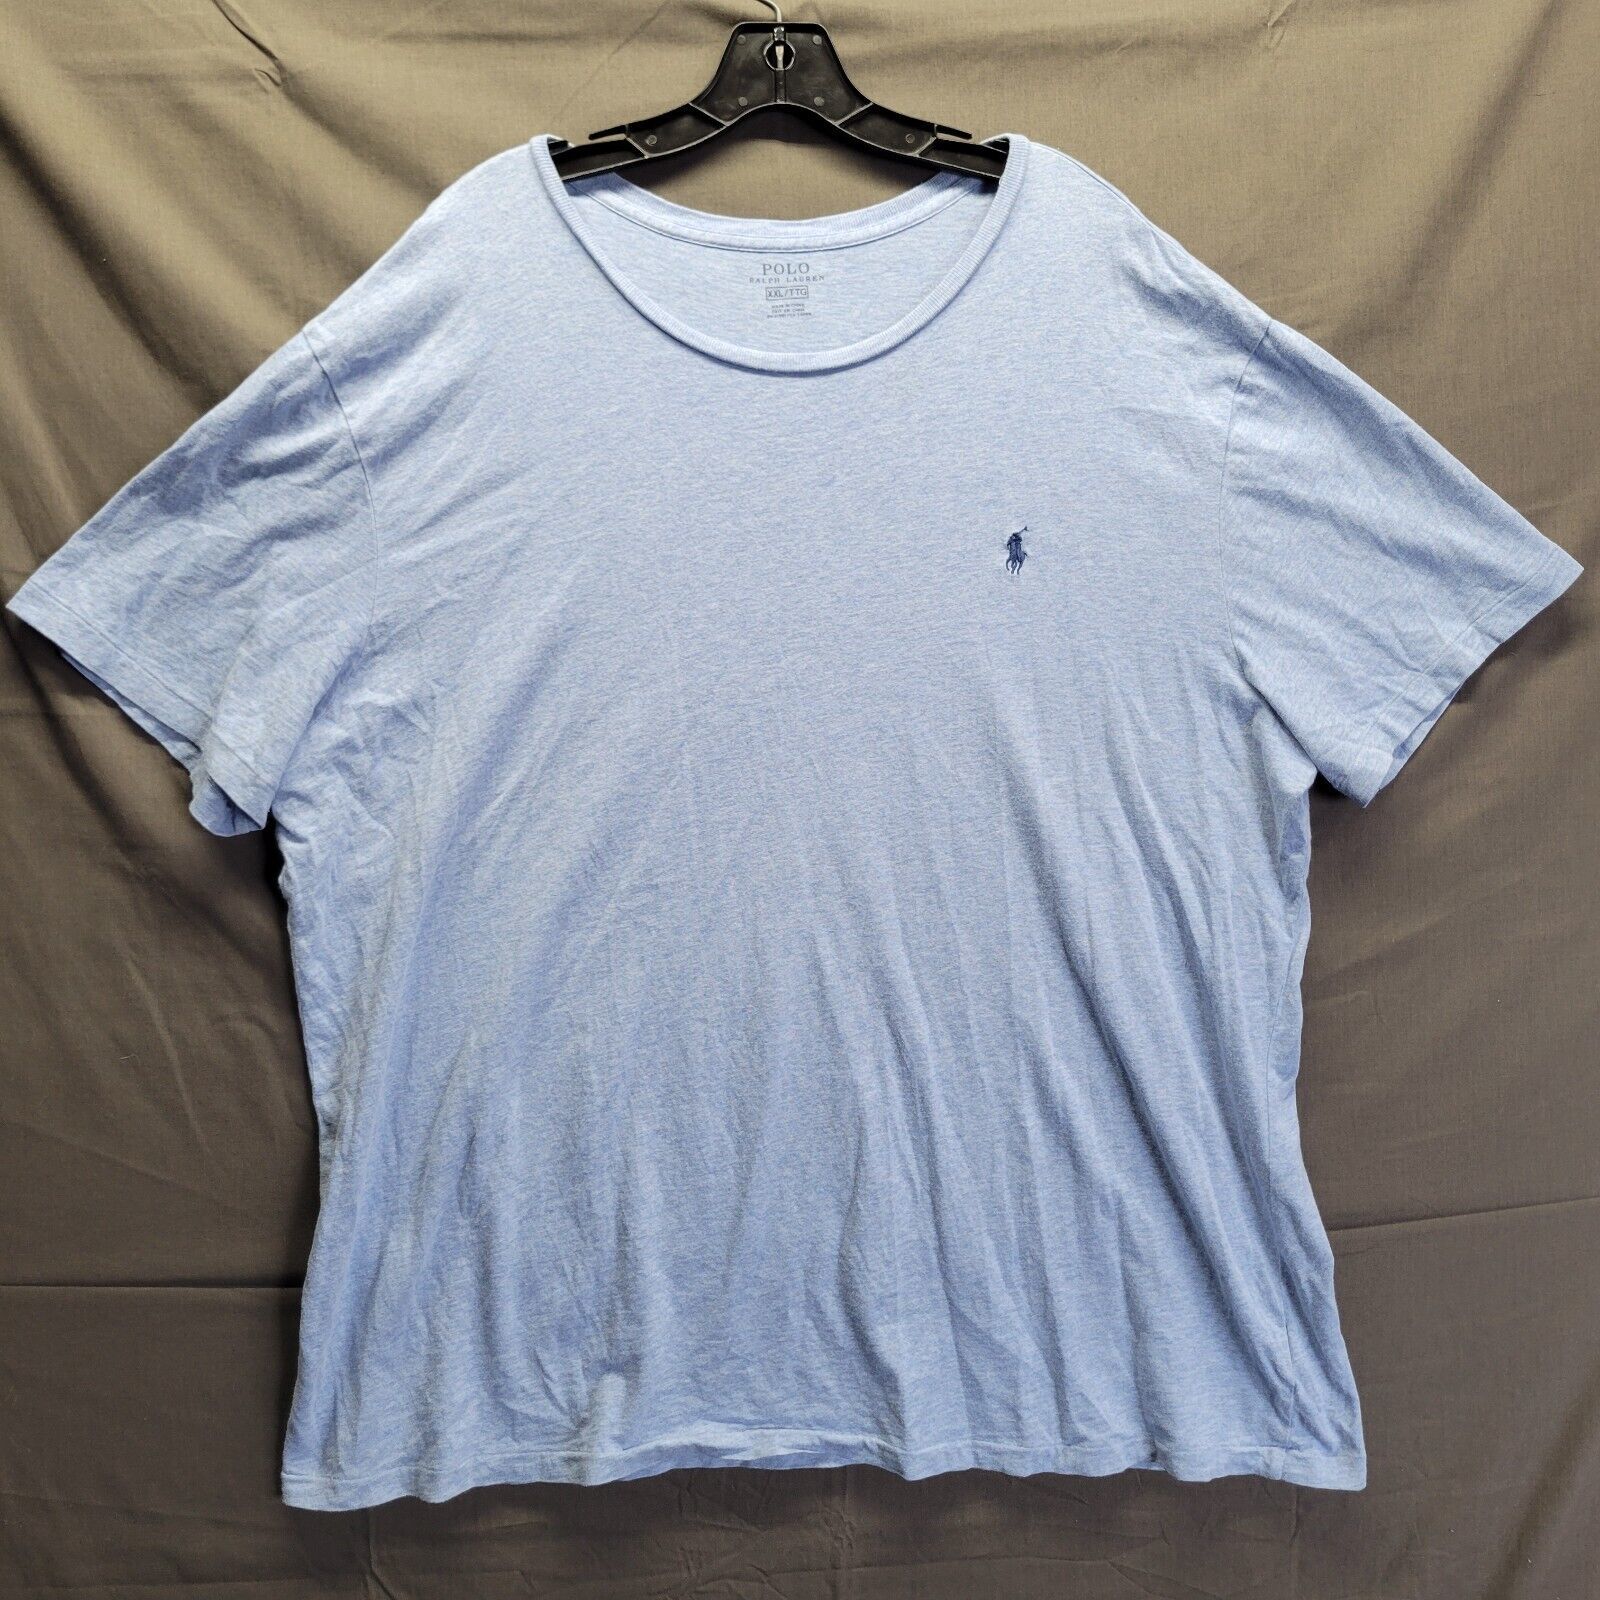 Primary image for Polo Ralph Lauren Men's T-shirt - XXL   - Light Blue